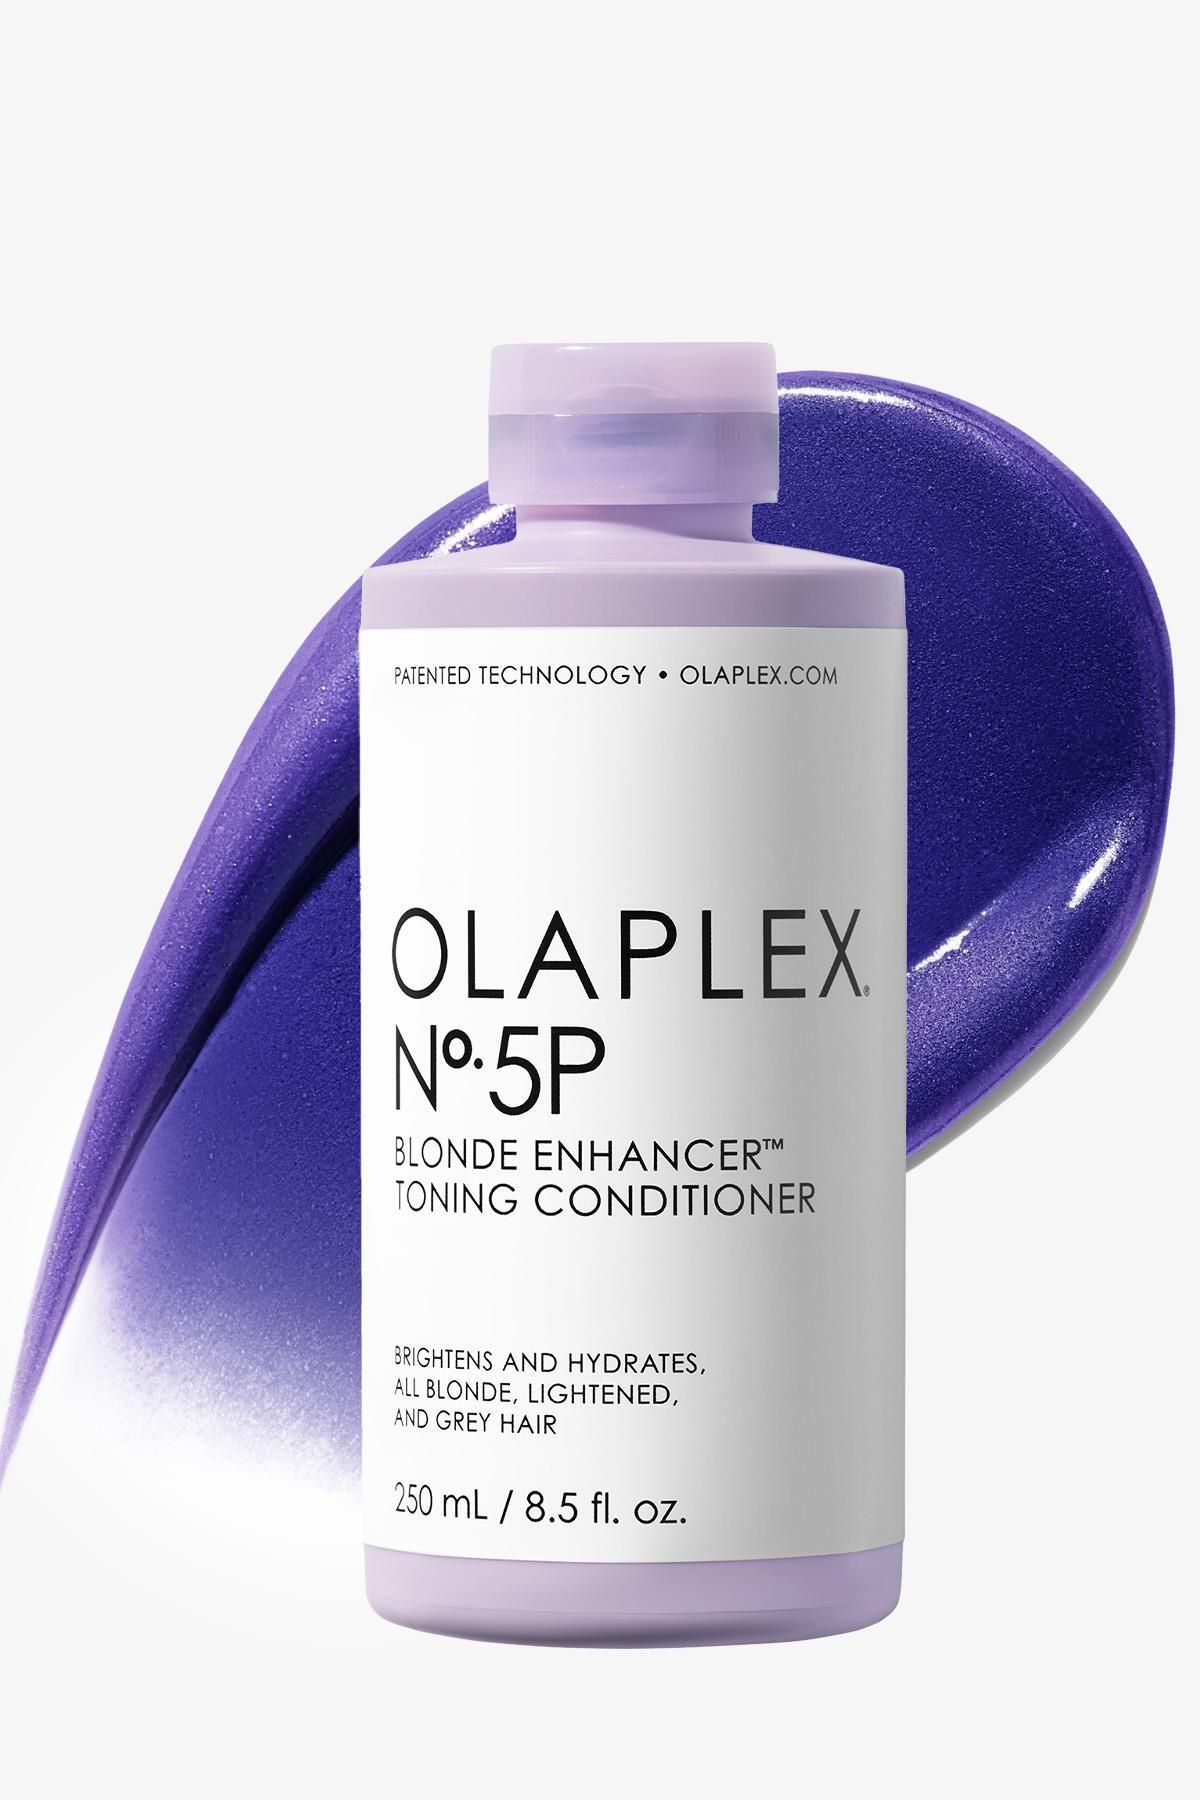 Olaplex No. 5p Blonde Enhancer Toning Conditioner - Renk Koruyucu & Bağ Güçlendirici Mor Saç Bakım Kremi